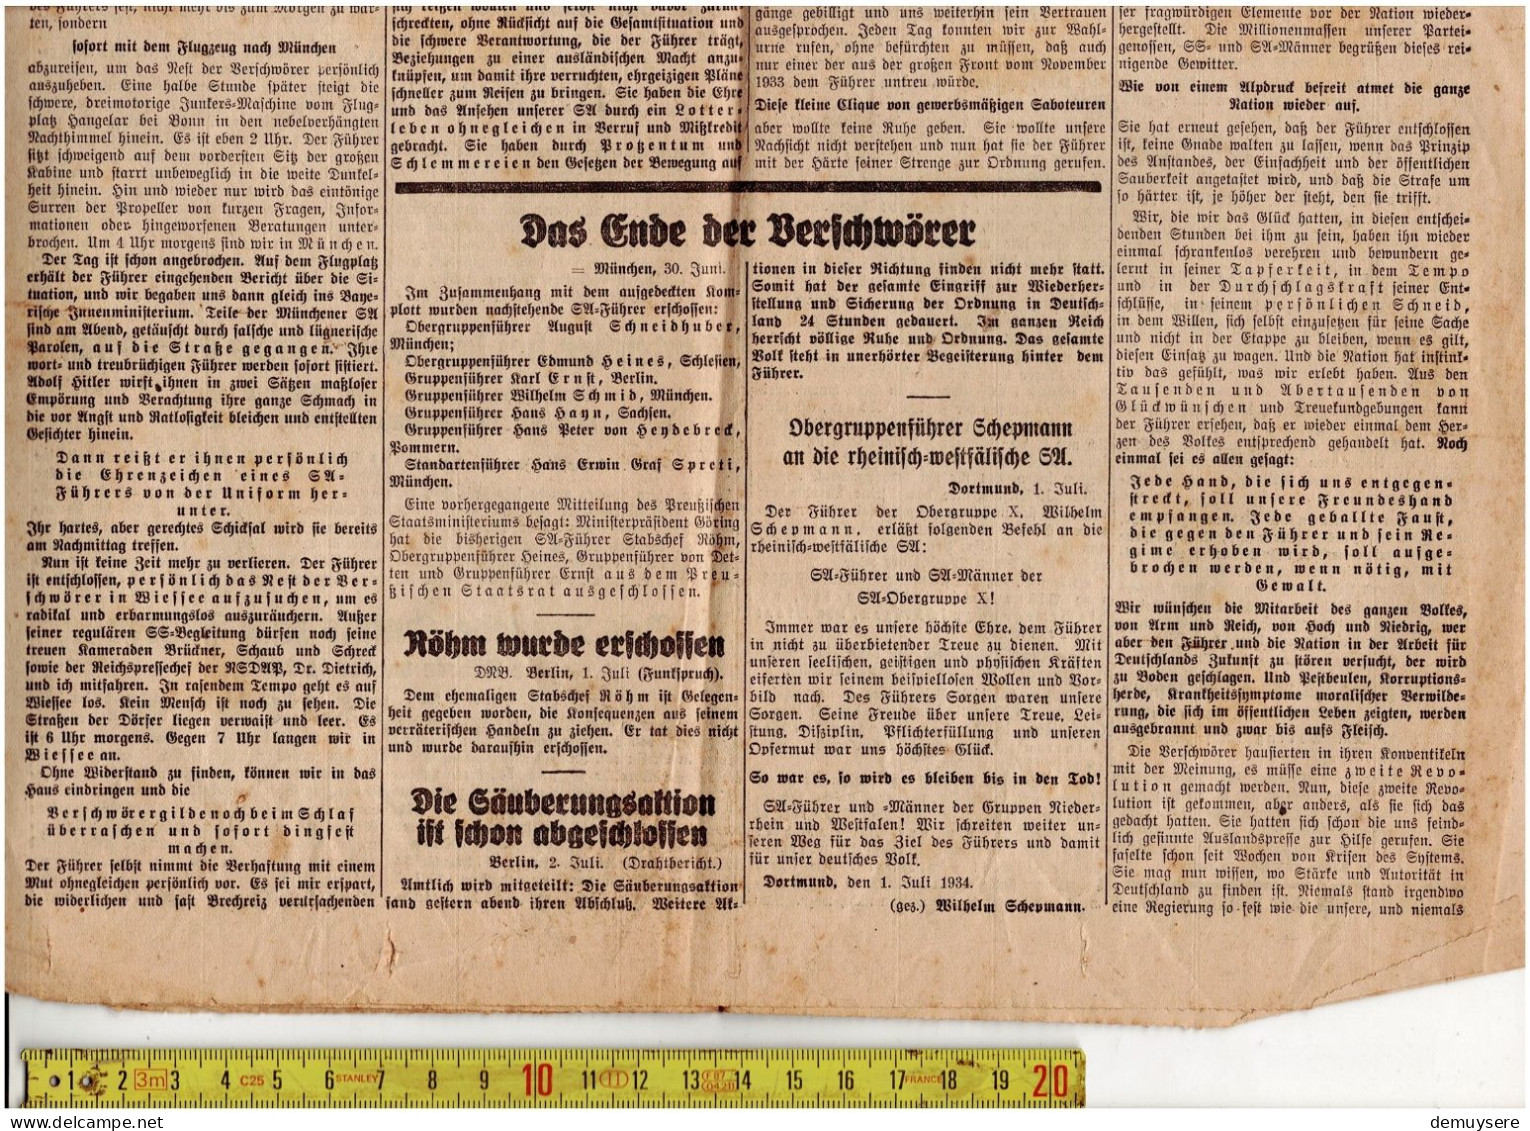 LADE R - MÜNSTERSCHE ZEITUNG 1934 - Collections